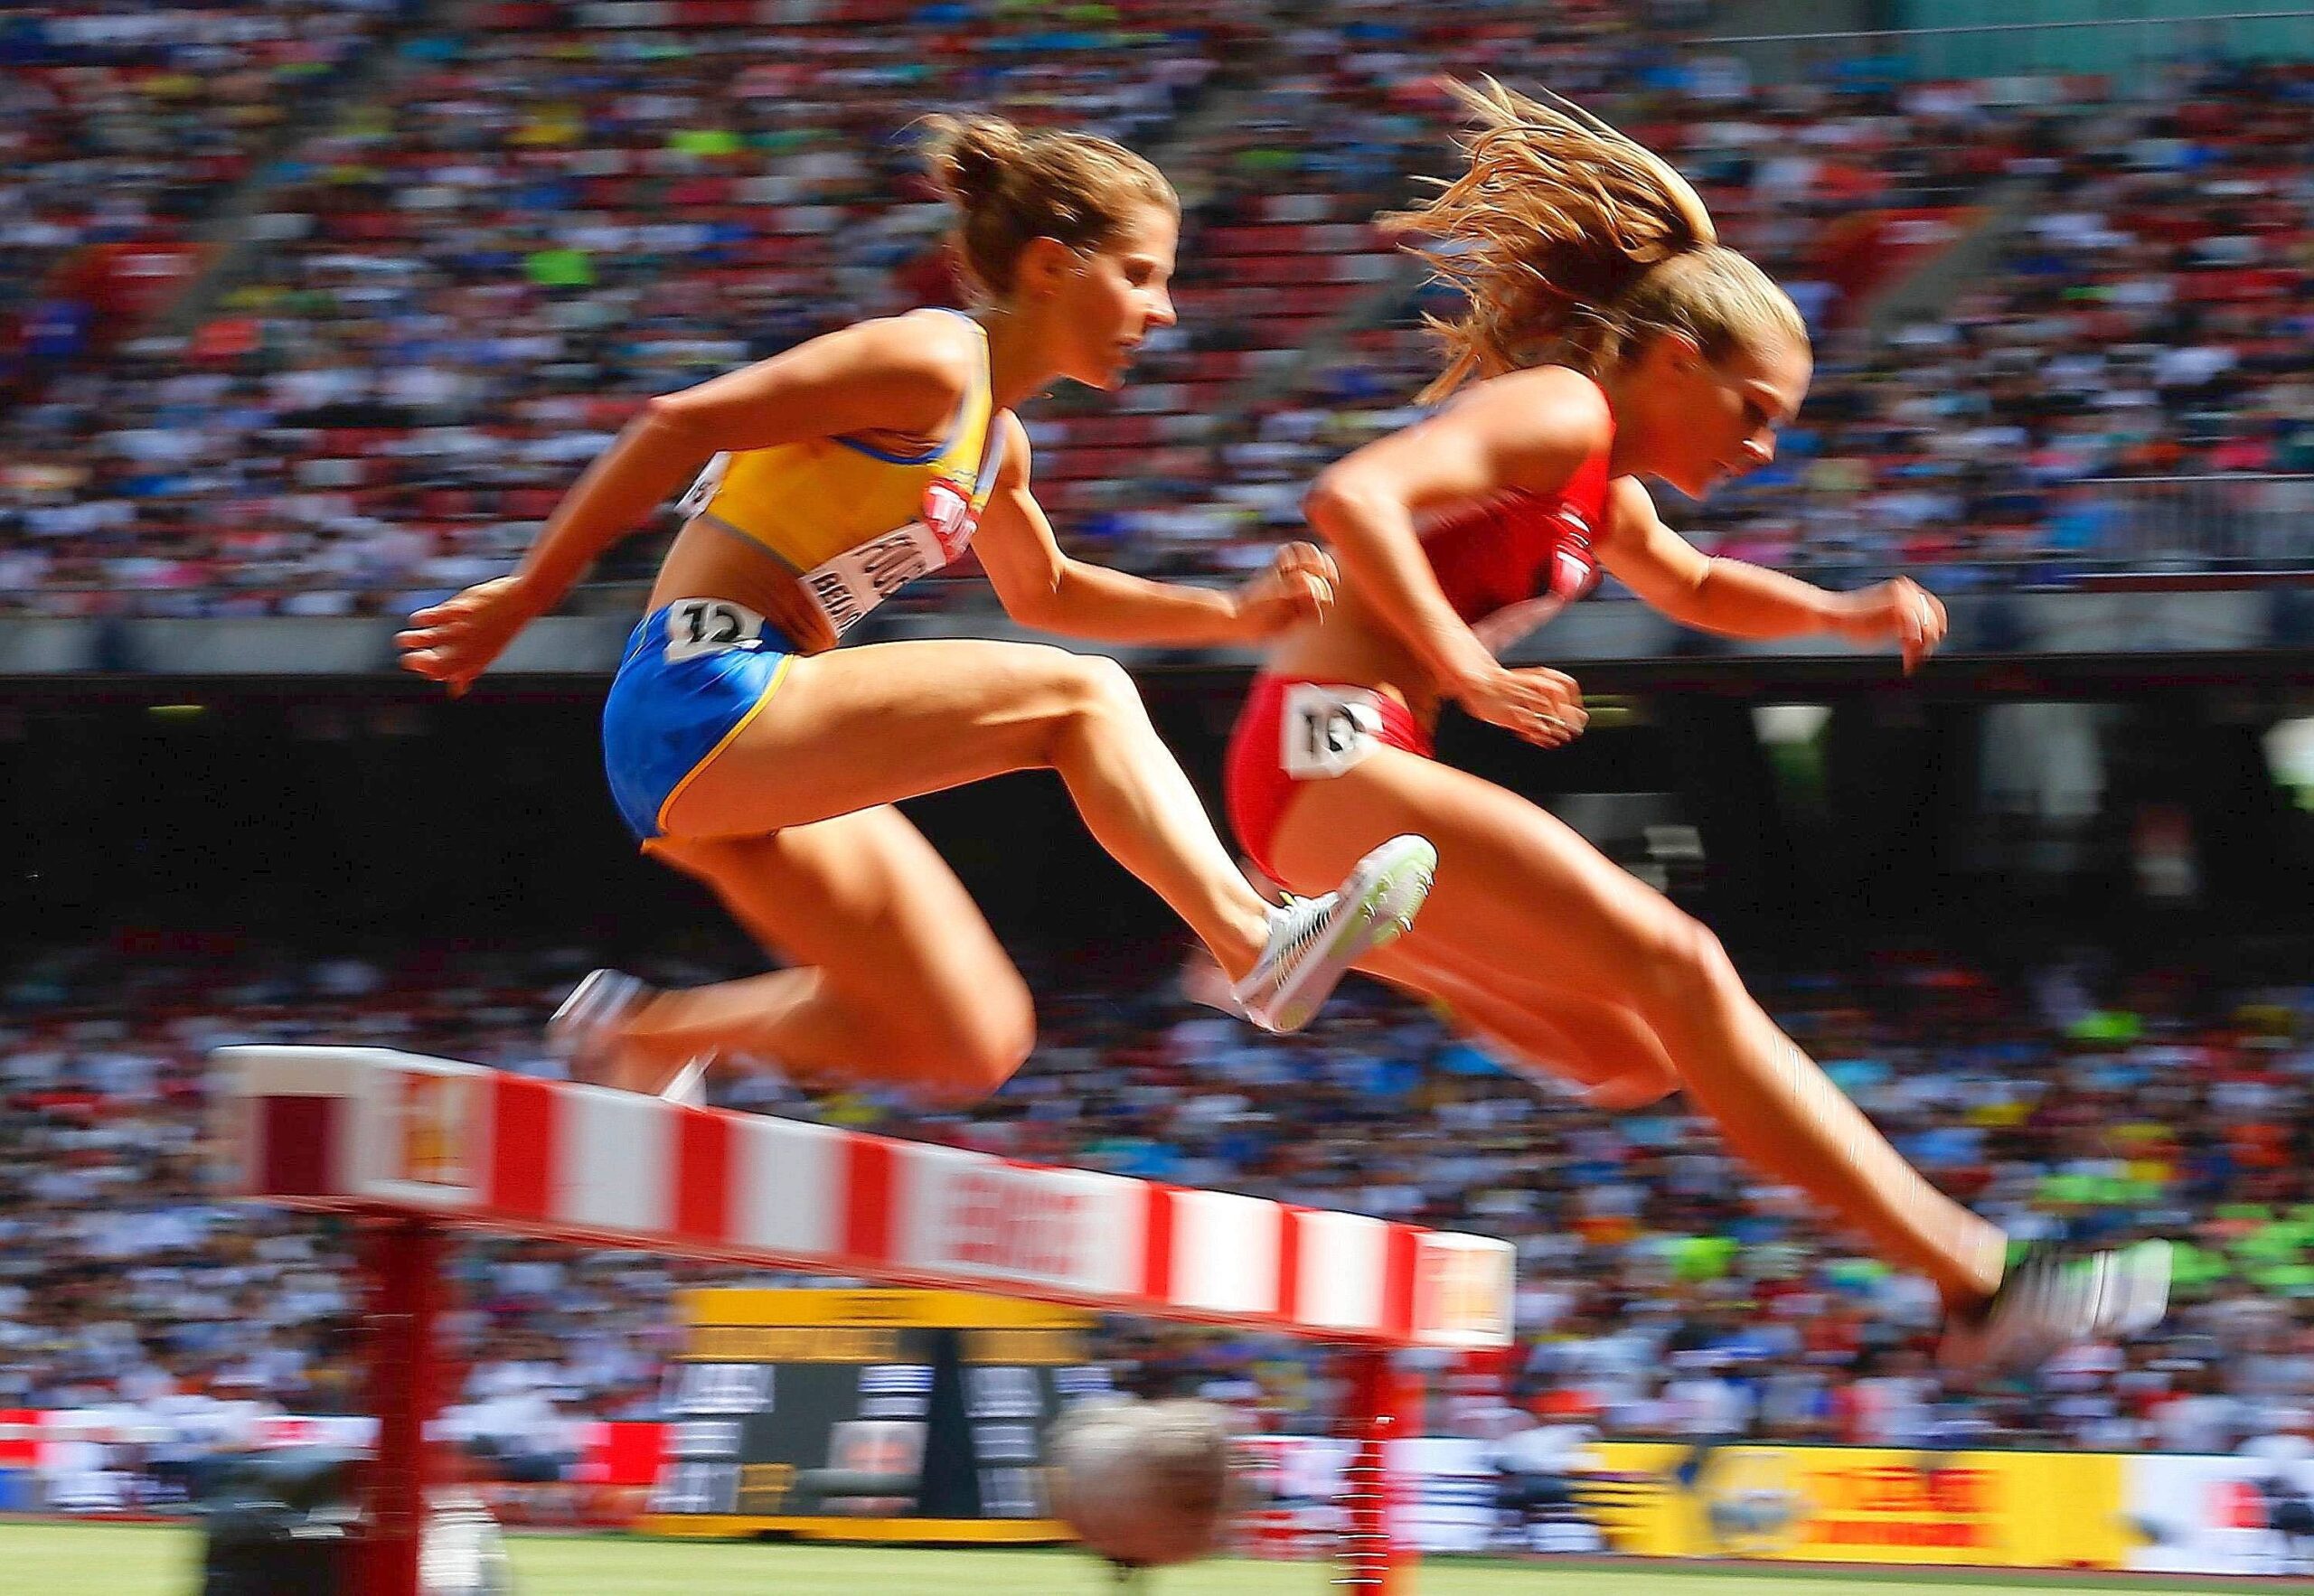 Bei der Leichtathletik-WM in Peking liefern die Sportler starke Leistungen und Emotionen. Für Deutschland holten unter anderem Kugelstoßerin Christina Schwanitz, ihr Kollege David Storl und Stabhochspringer Raphael Holzdeppe Medaillen. Alles überragender Star war 100-Meter-Weltmeister Usain Bolt.